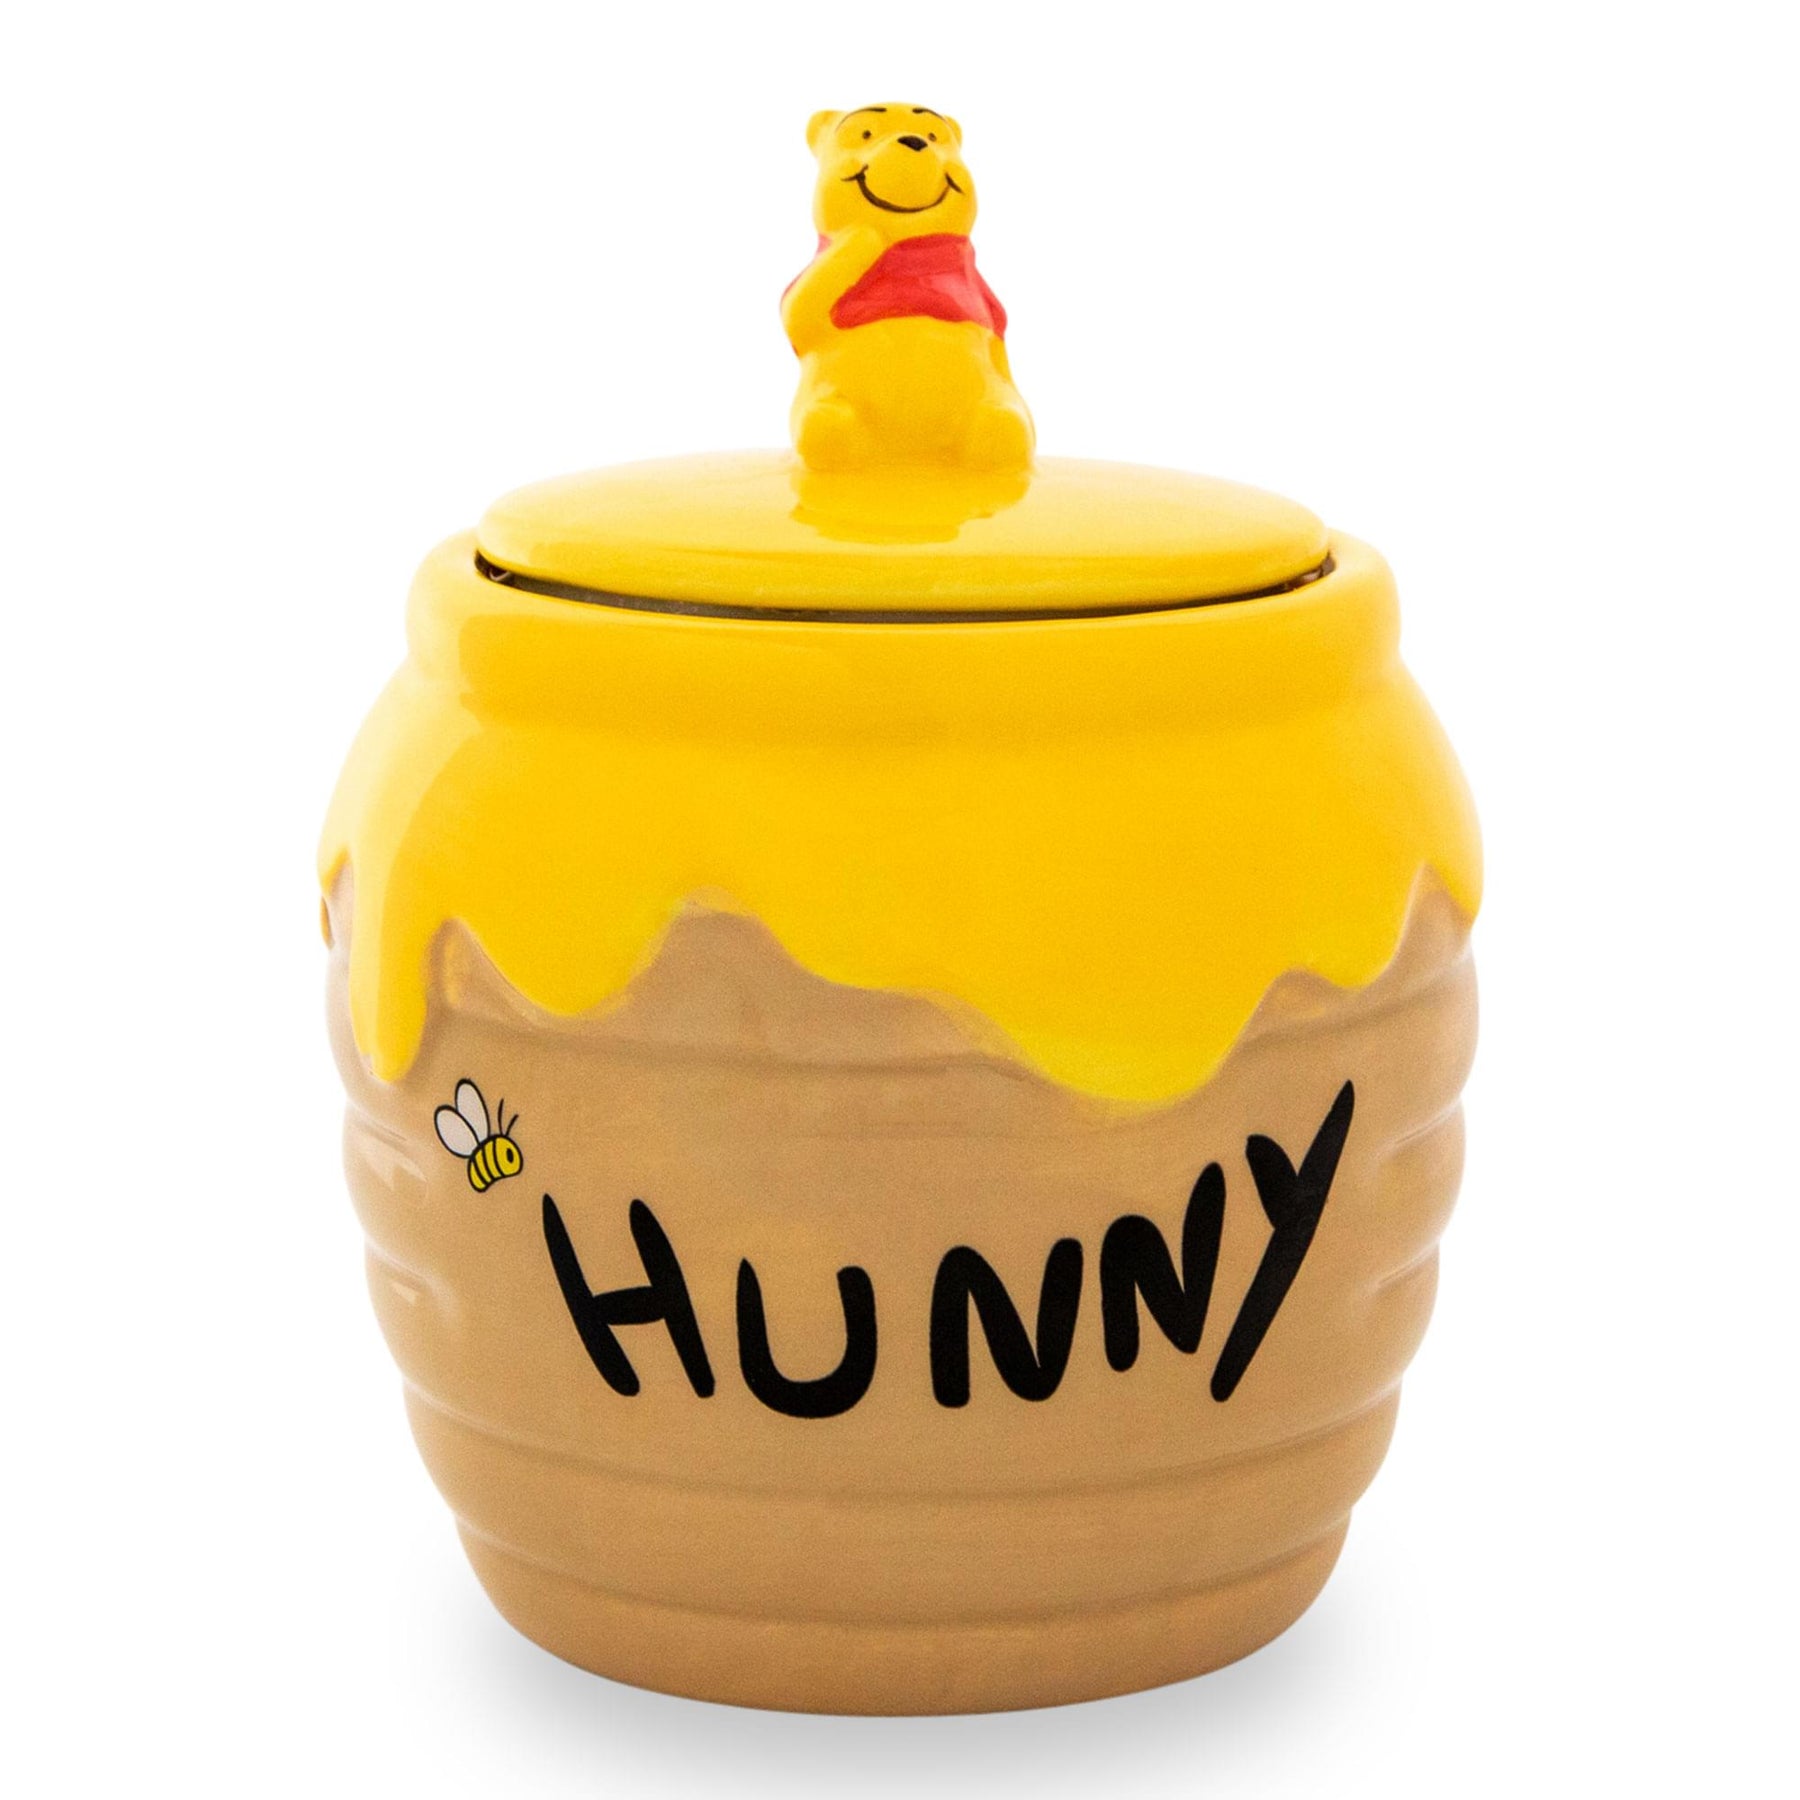 Disney Winnie the Pooh Hunny Pot Ceramic Snack Jar | 6 Inches Tall